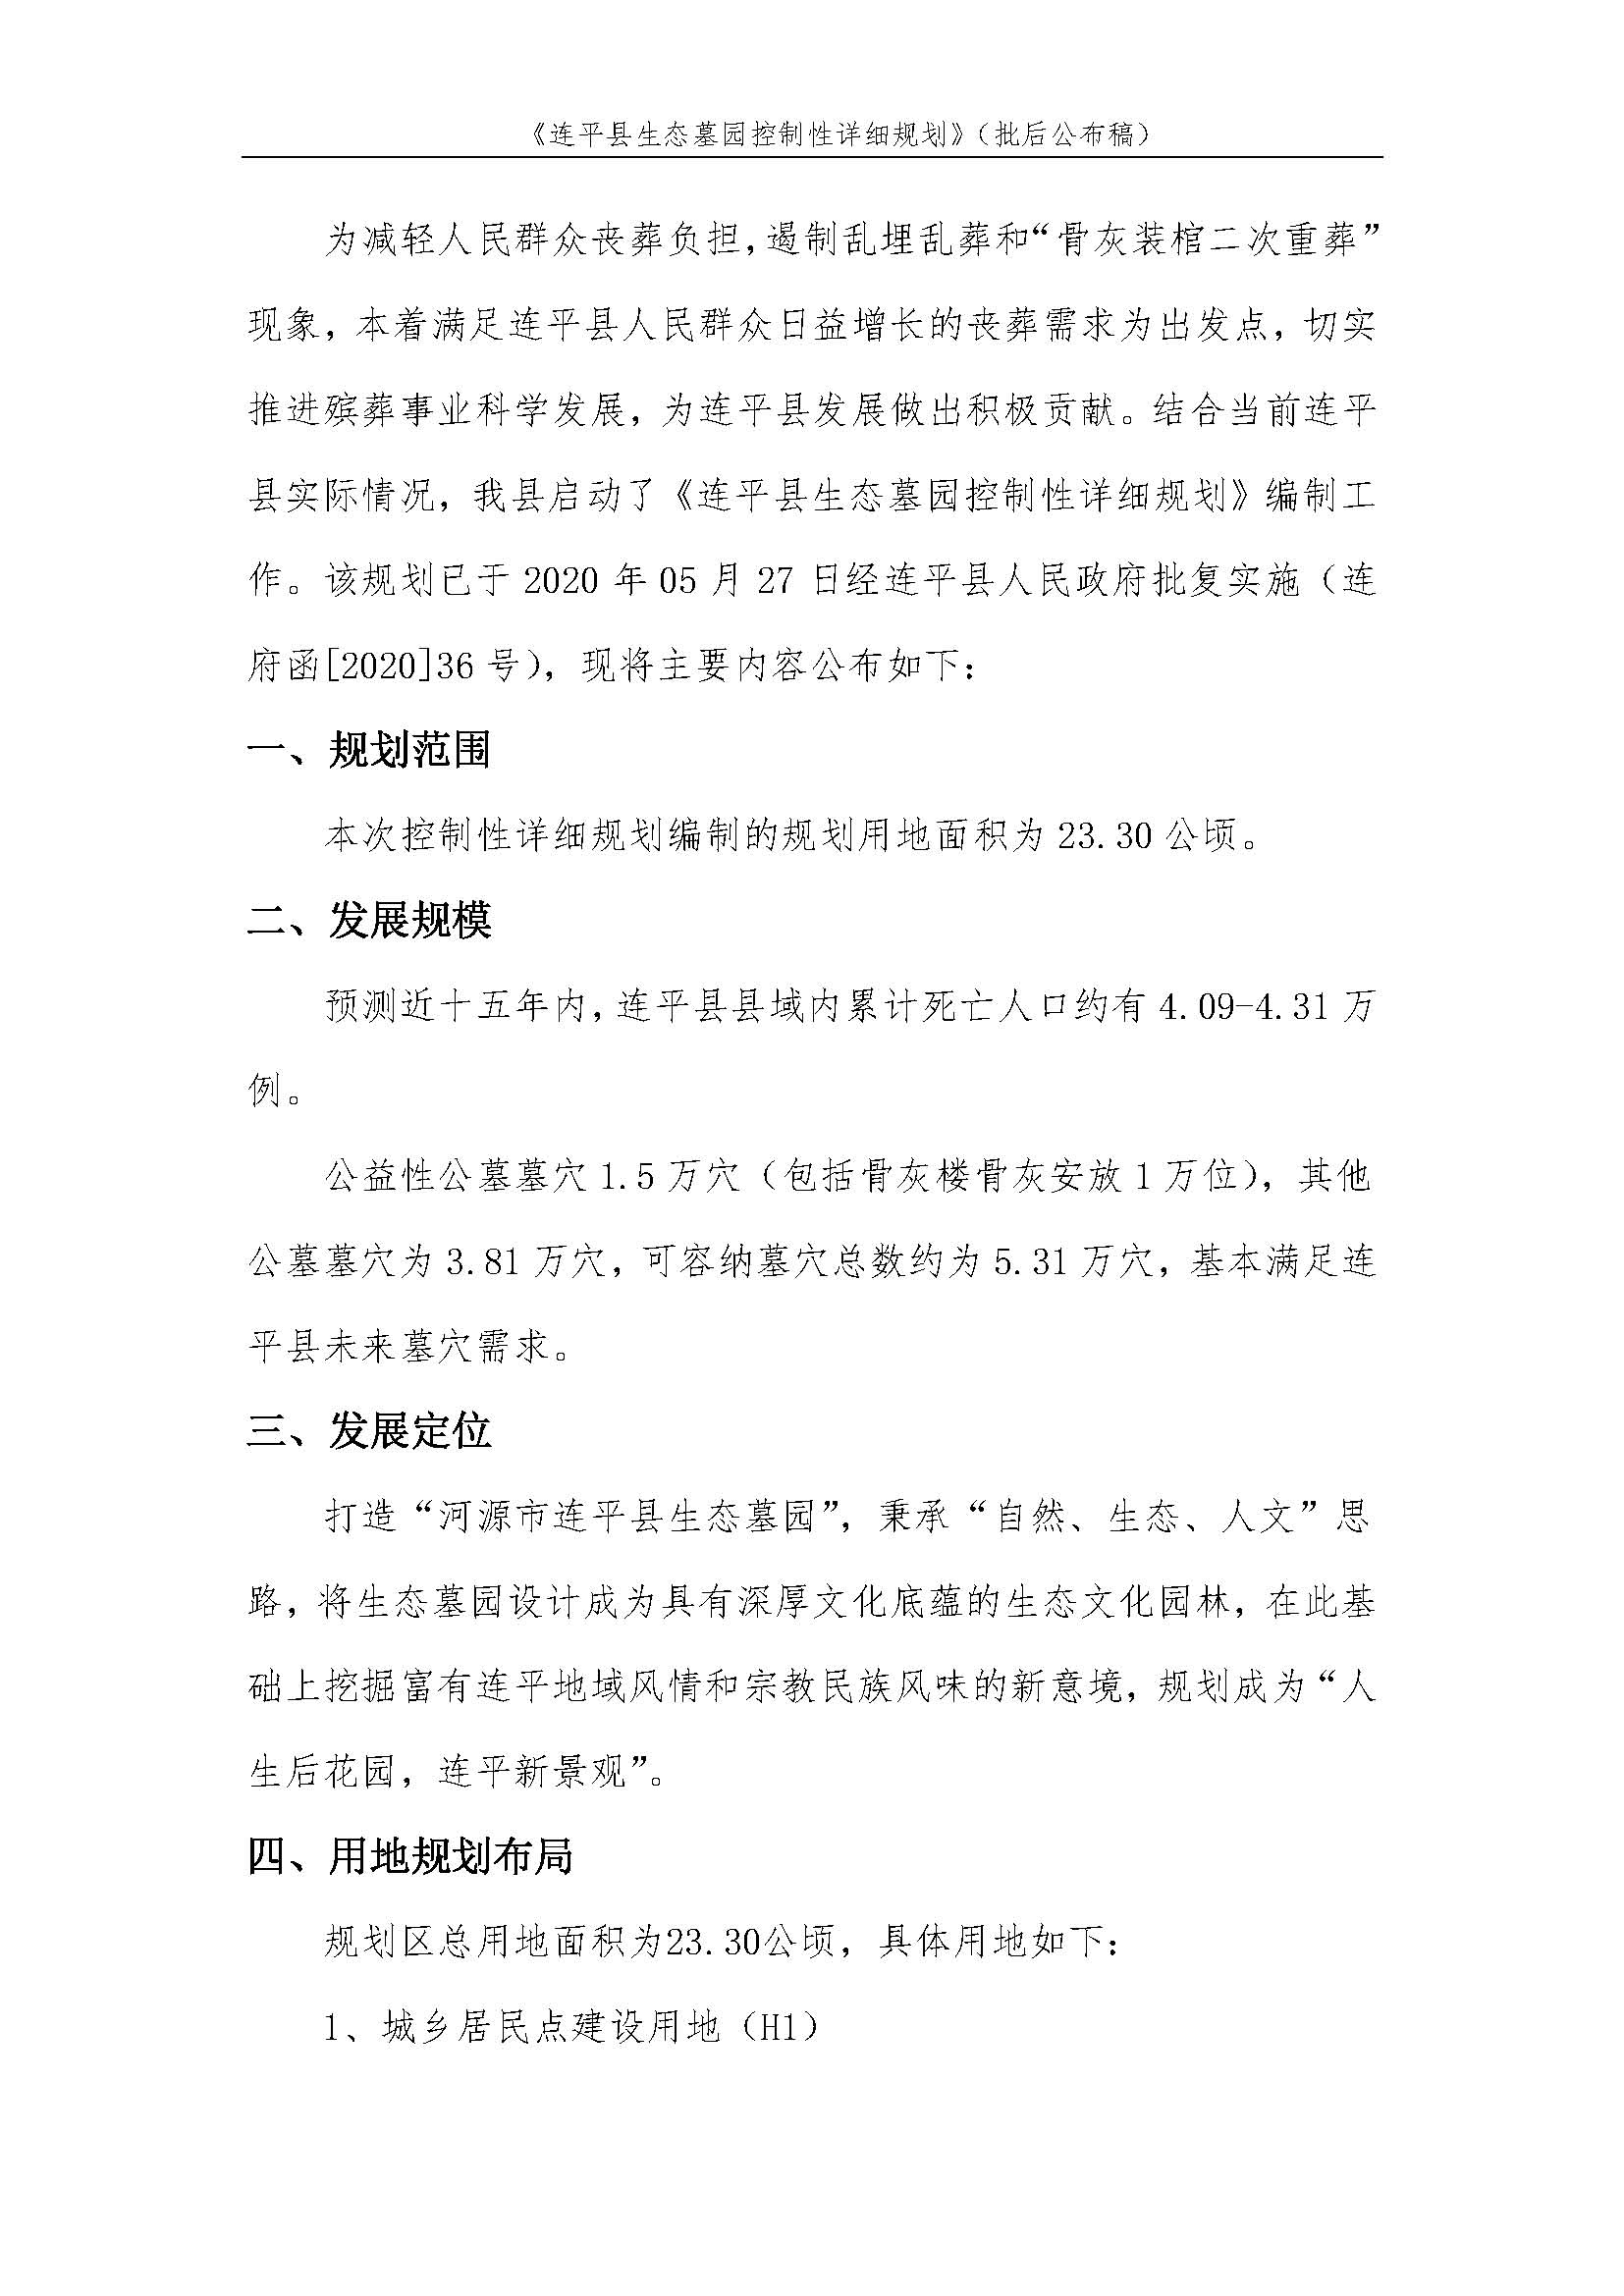 连平县生态墓园控制性详细规划批后公布稿_页面_3.jpg